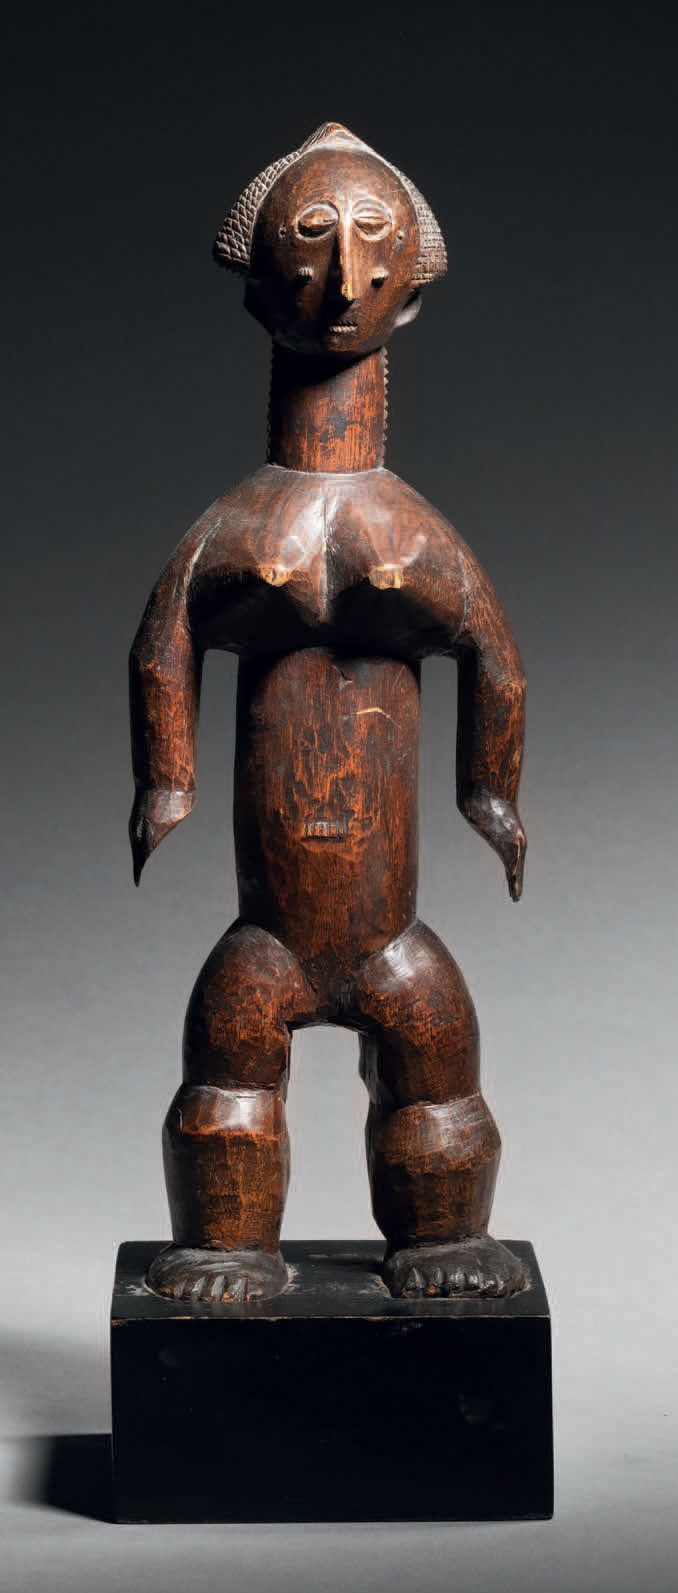 Null Statua Attie, zona lagunare, Costa d'Avorio
Legno
H. 27 cm
Figura Attie, zo&hellip;